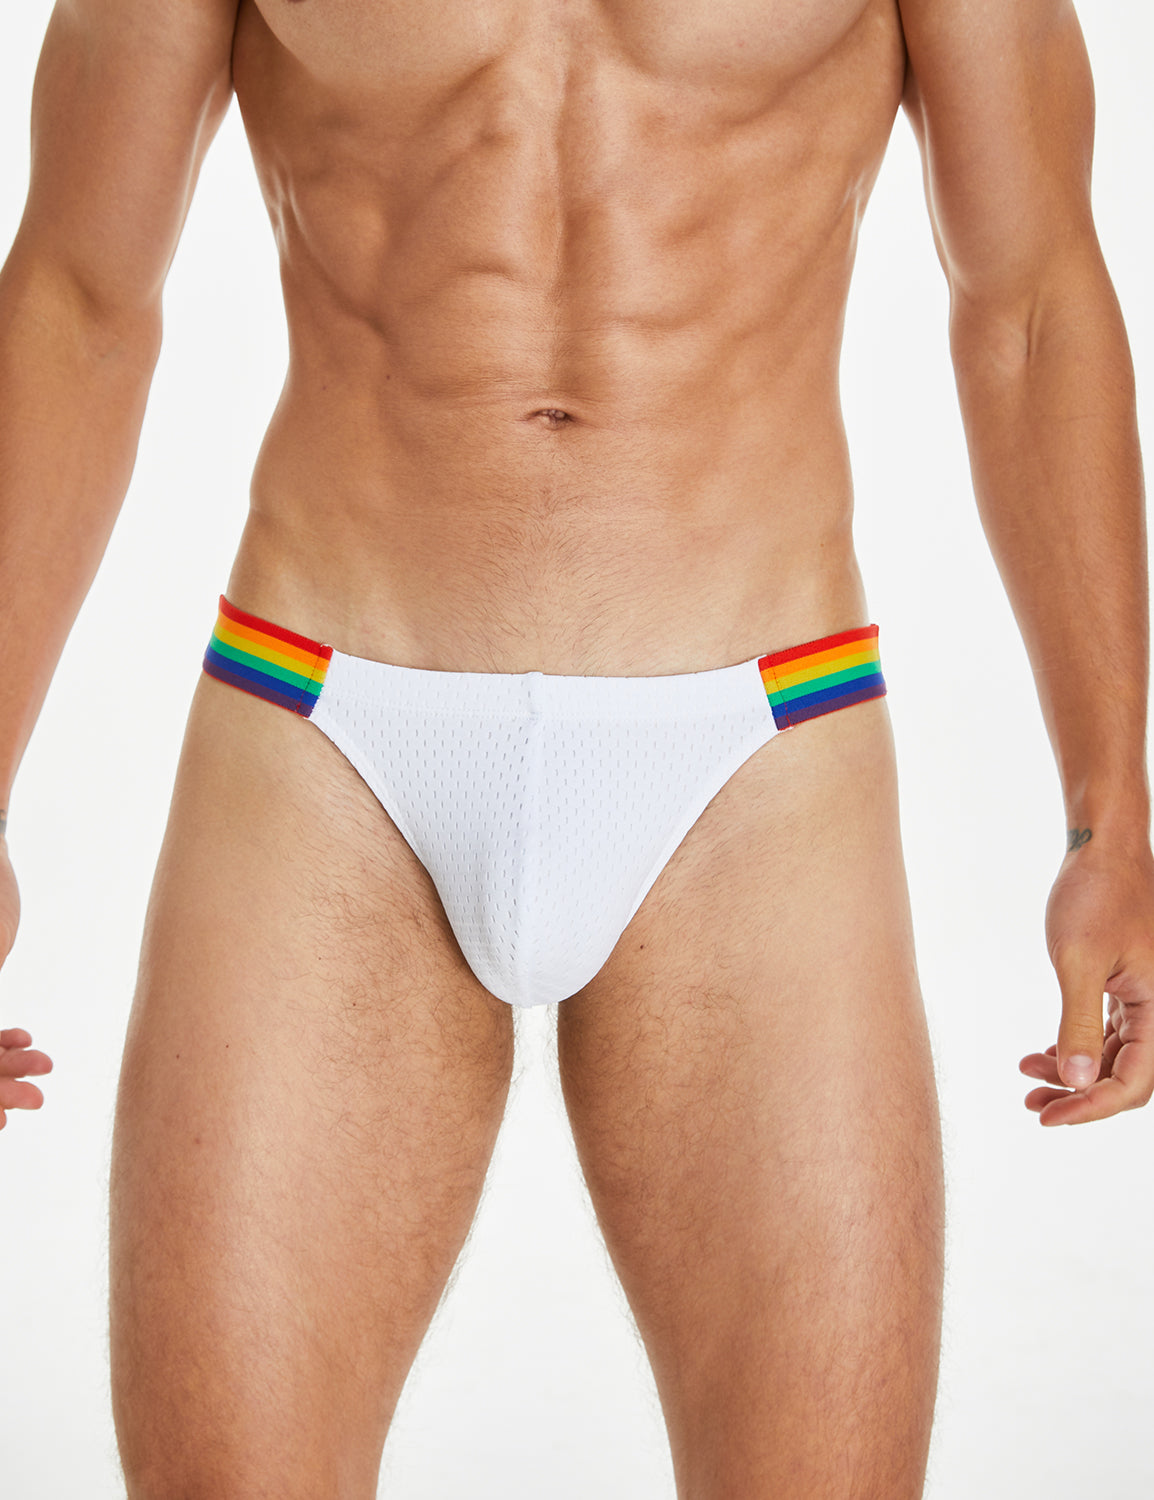 SEOBEAN Mens Sexy Low Rise Rainbow Mesh Brief Underwear 240103 – SEOBEAN®